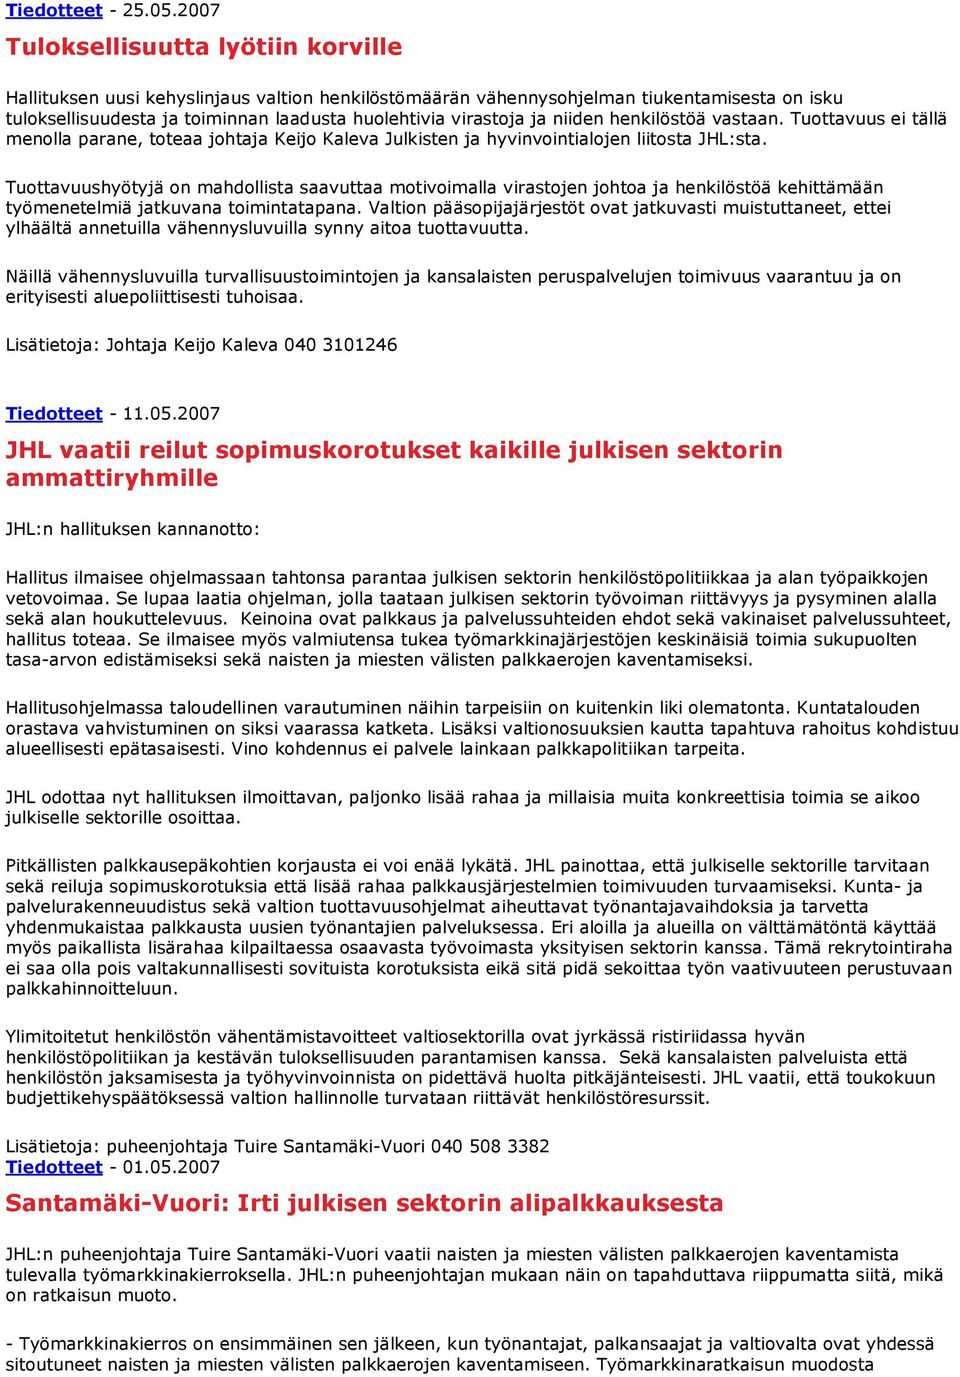 ja niiden henkilöstöä vastaan. Tuottavuus ei tällä menolla parane, toteaa johtaja Keijo Kaleva Julkisten ja hyvinvointialojen liitosta JHL:sta.